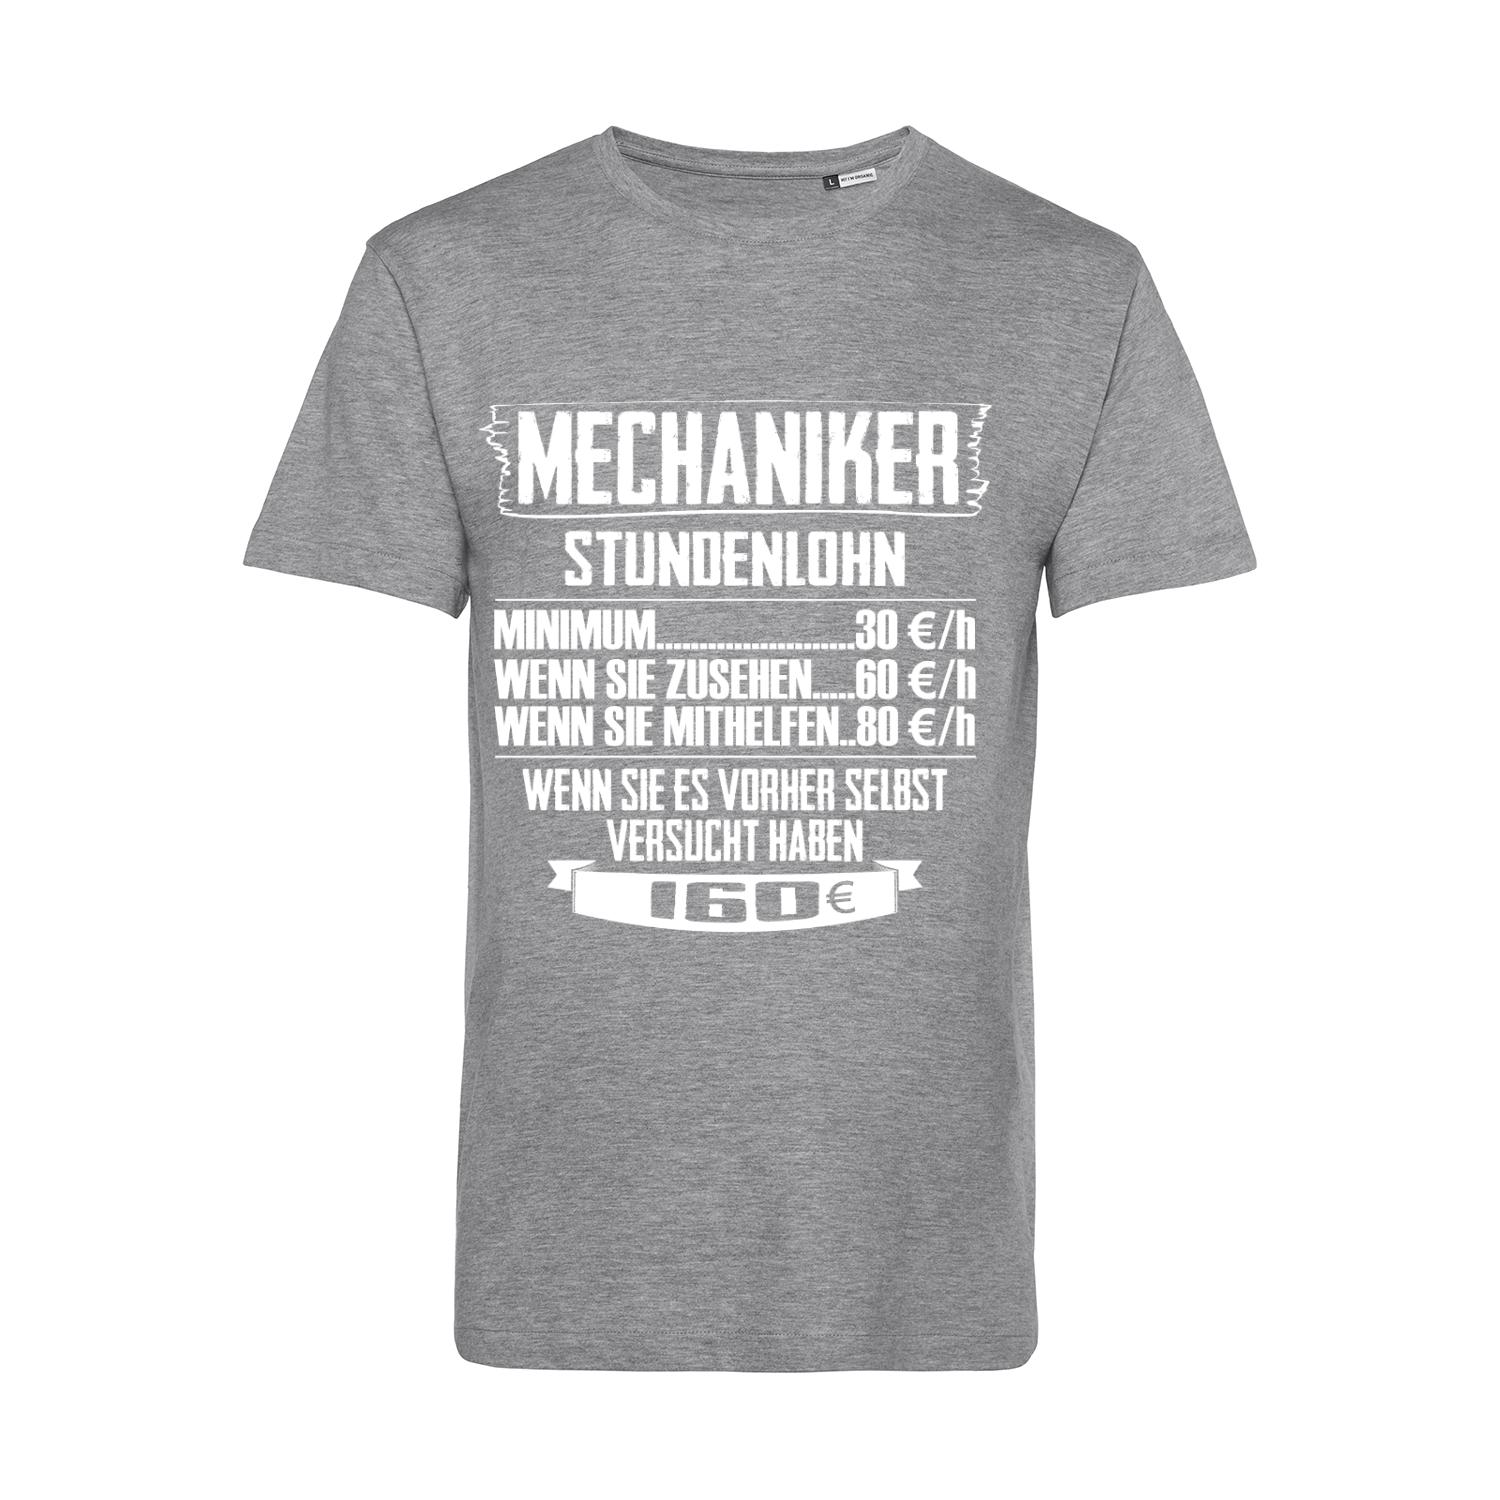 Nachhaltiges T-Shirt Herren Mechaniker - Stundenlohn Staffel